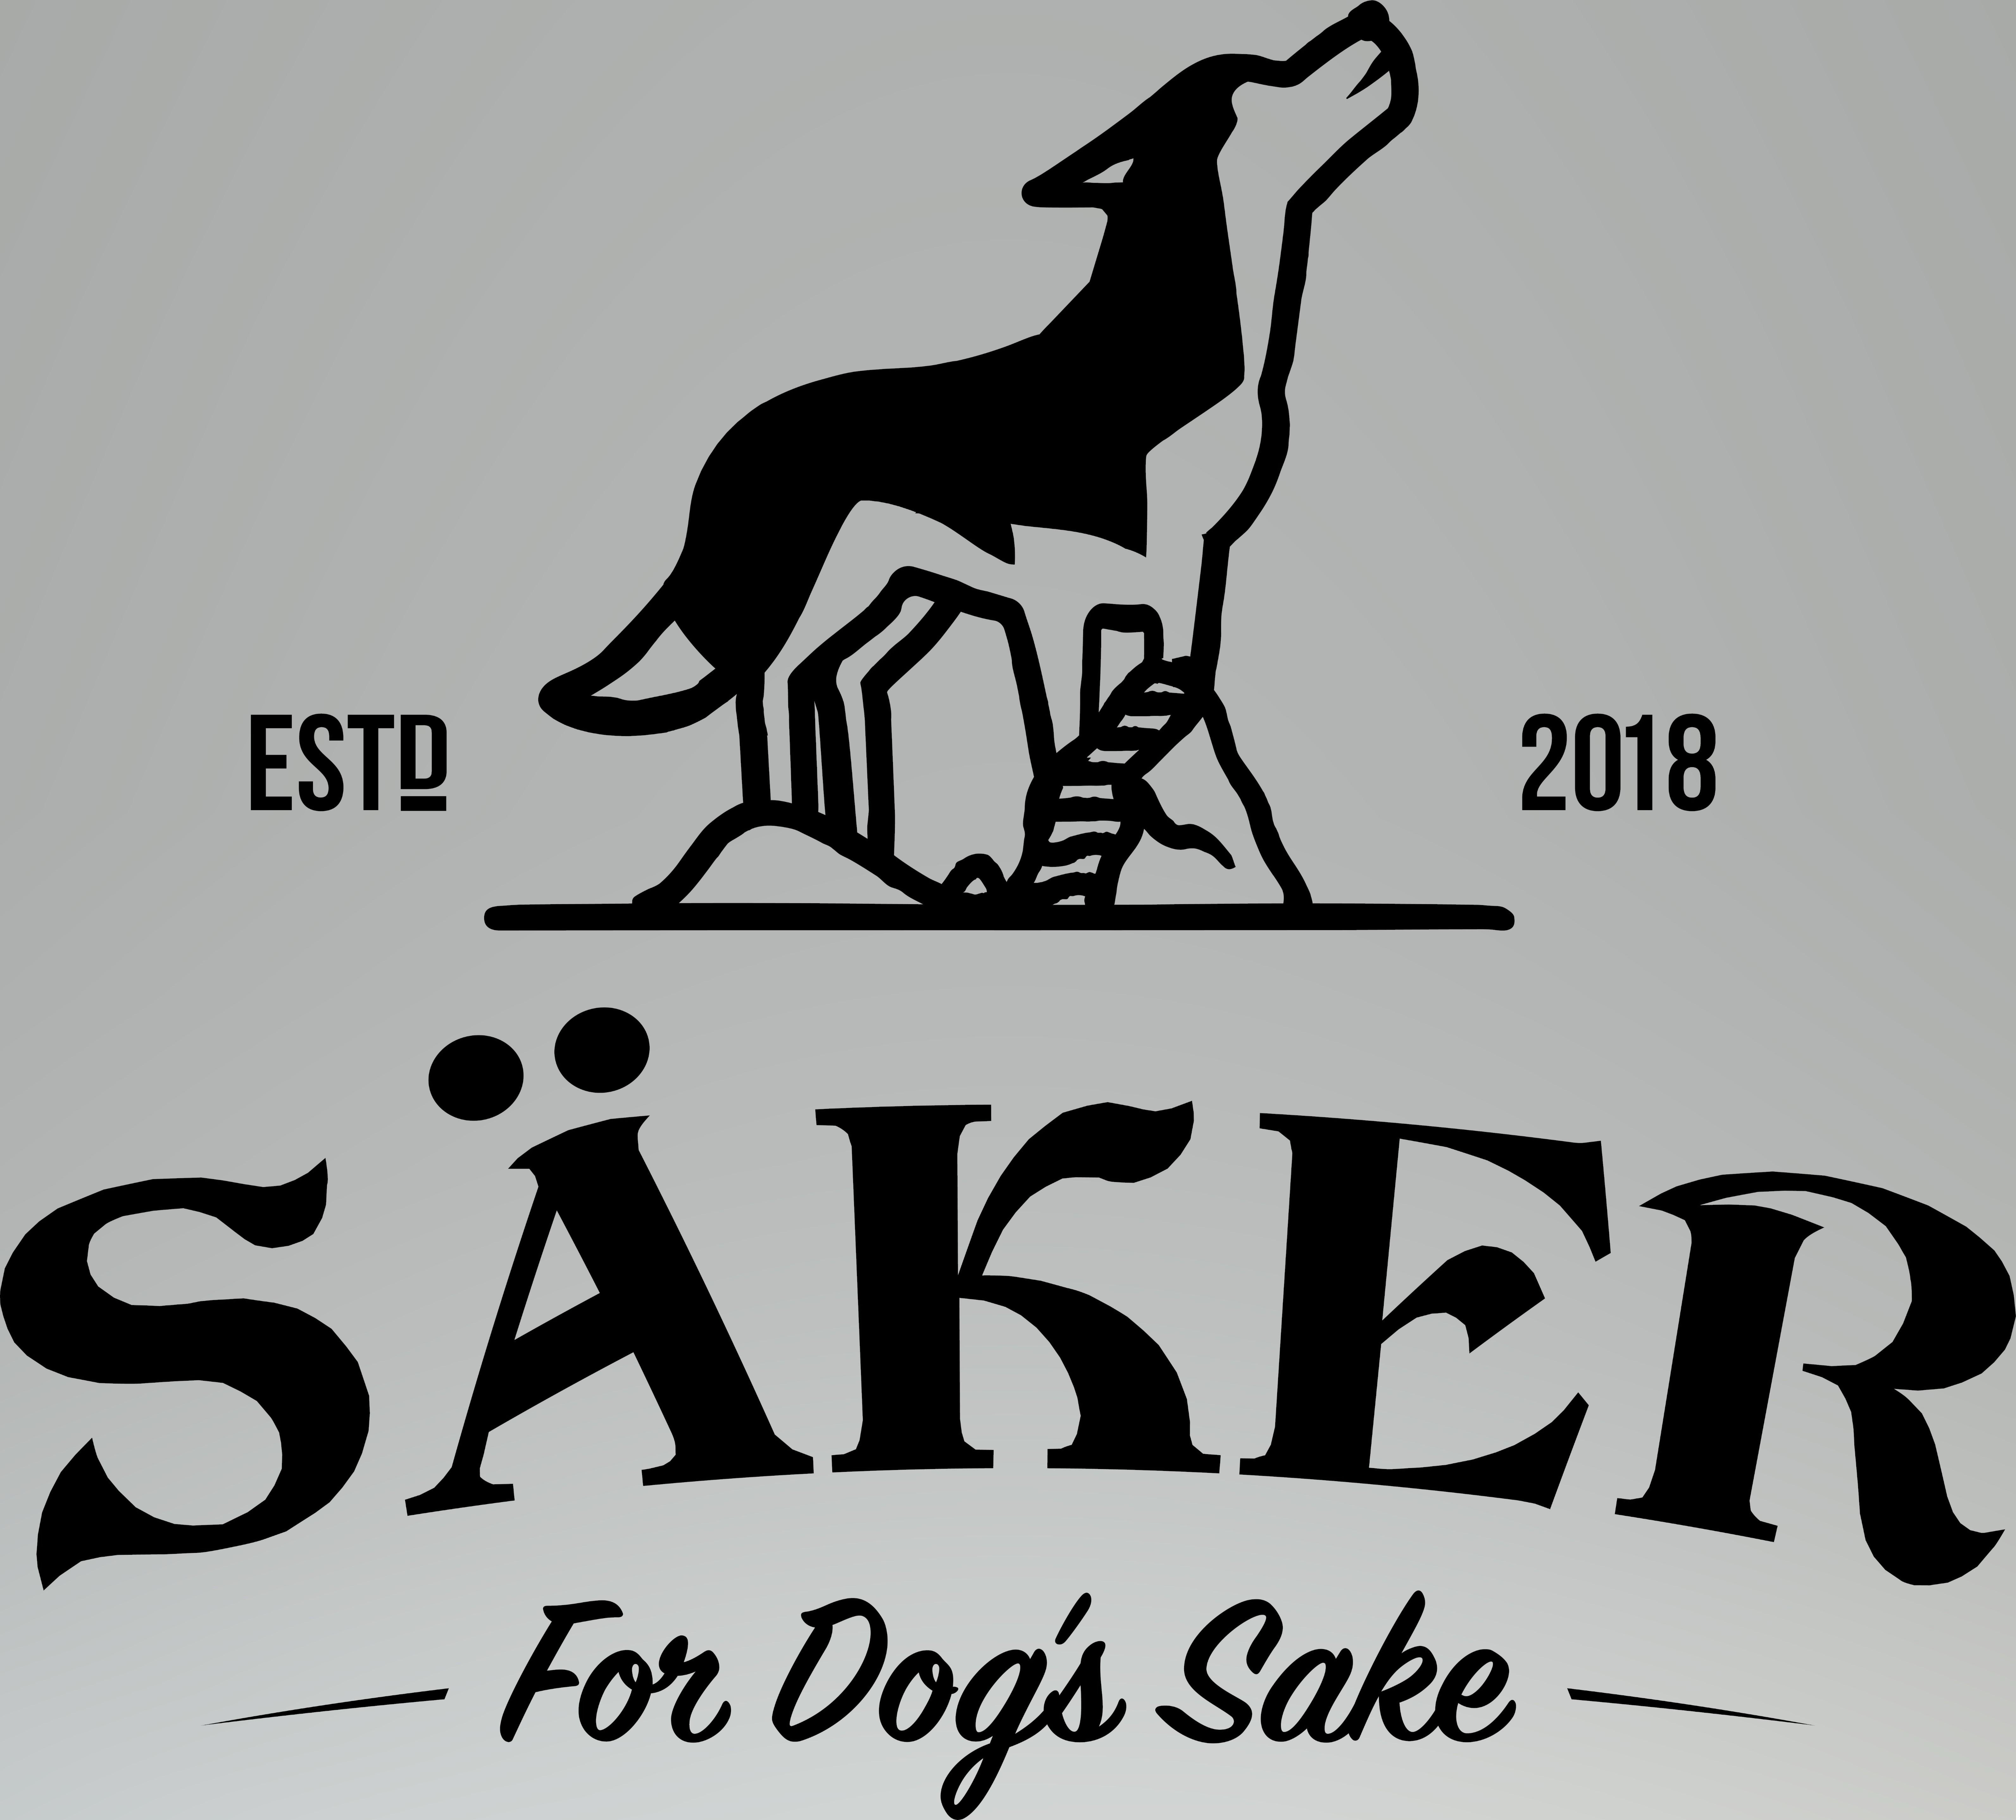  ESTO 2018 SÃKER FOR DOG'S SAKE